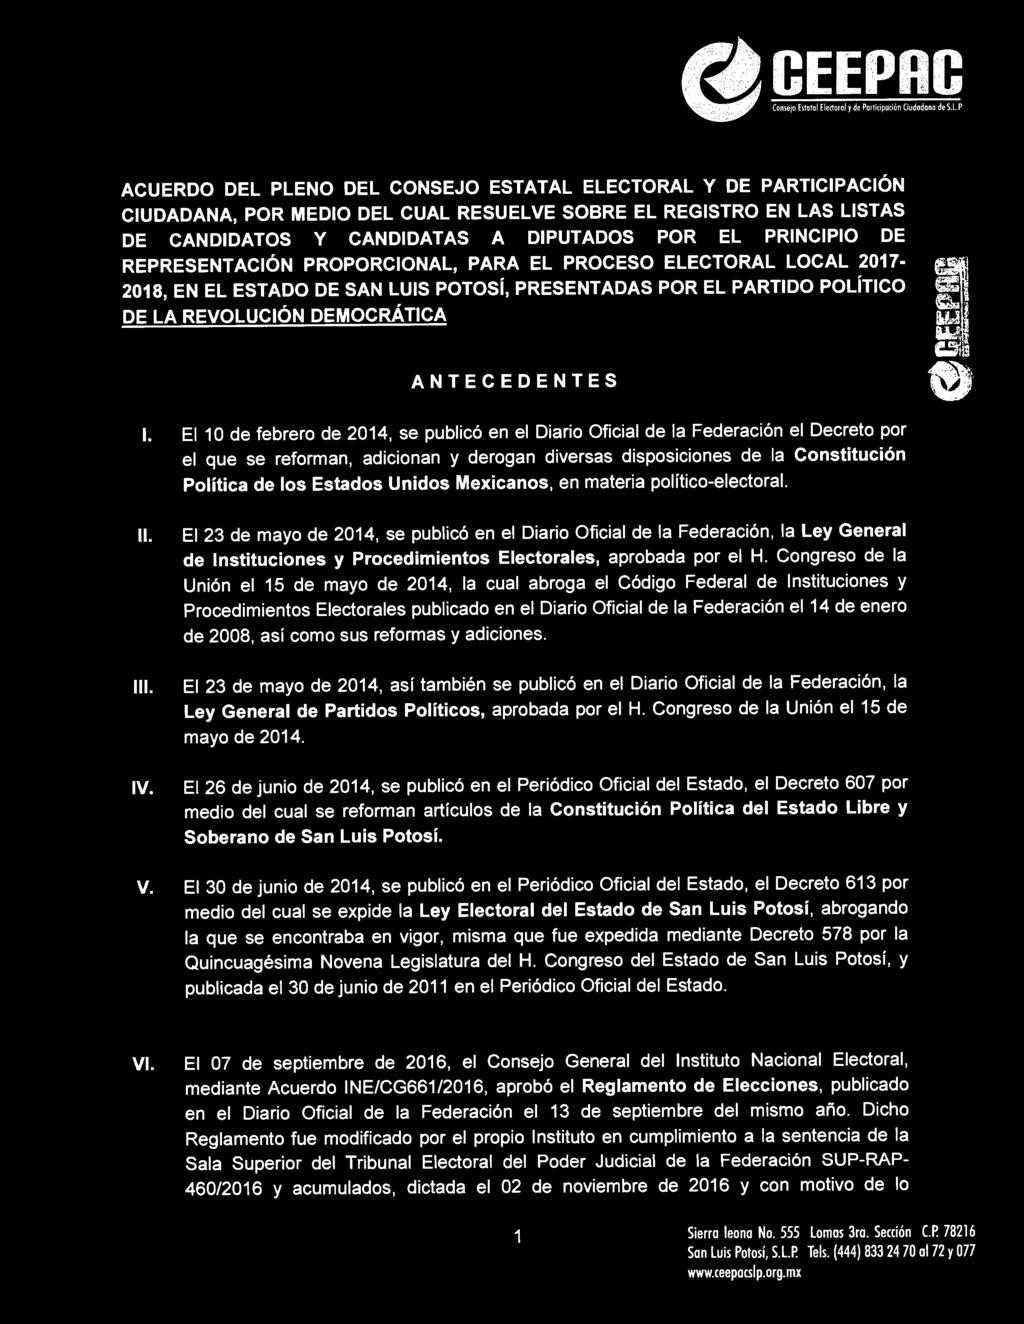 El 10 de febrero de 2014, se publicó en el Diario Oficial de la Federación el Decreto por el que se reforman, adicionan y derogan diversas disposiciones de la Constitución Política de los Estados